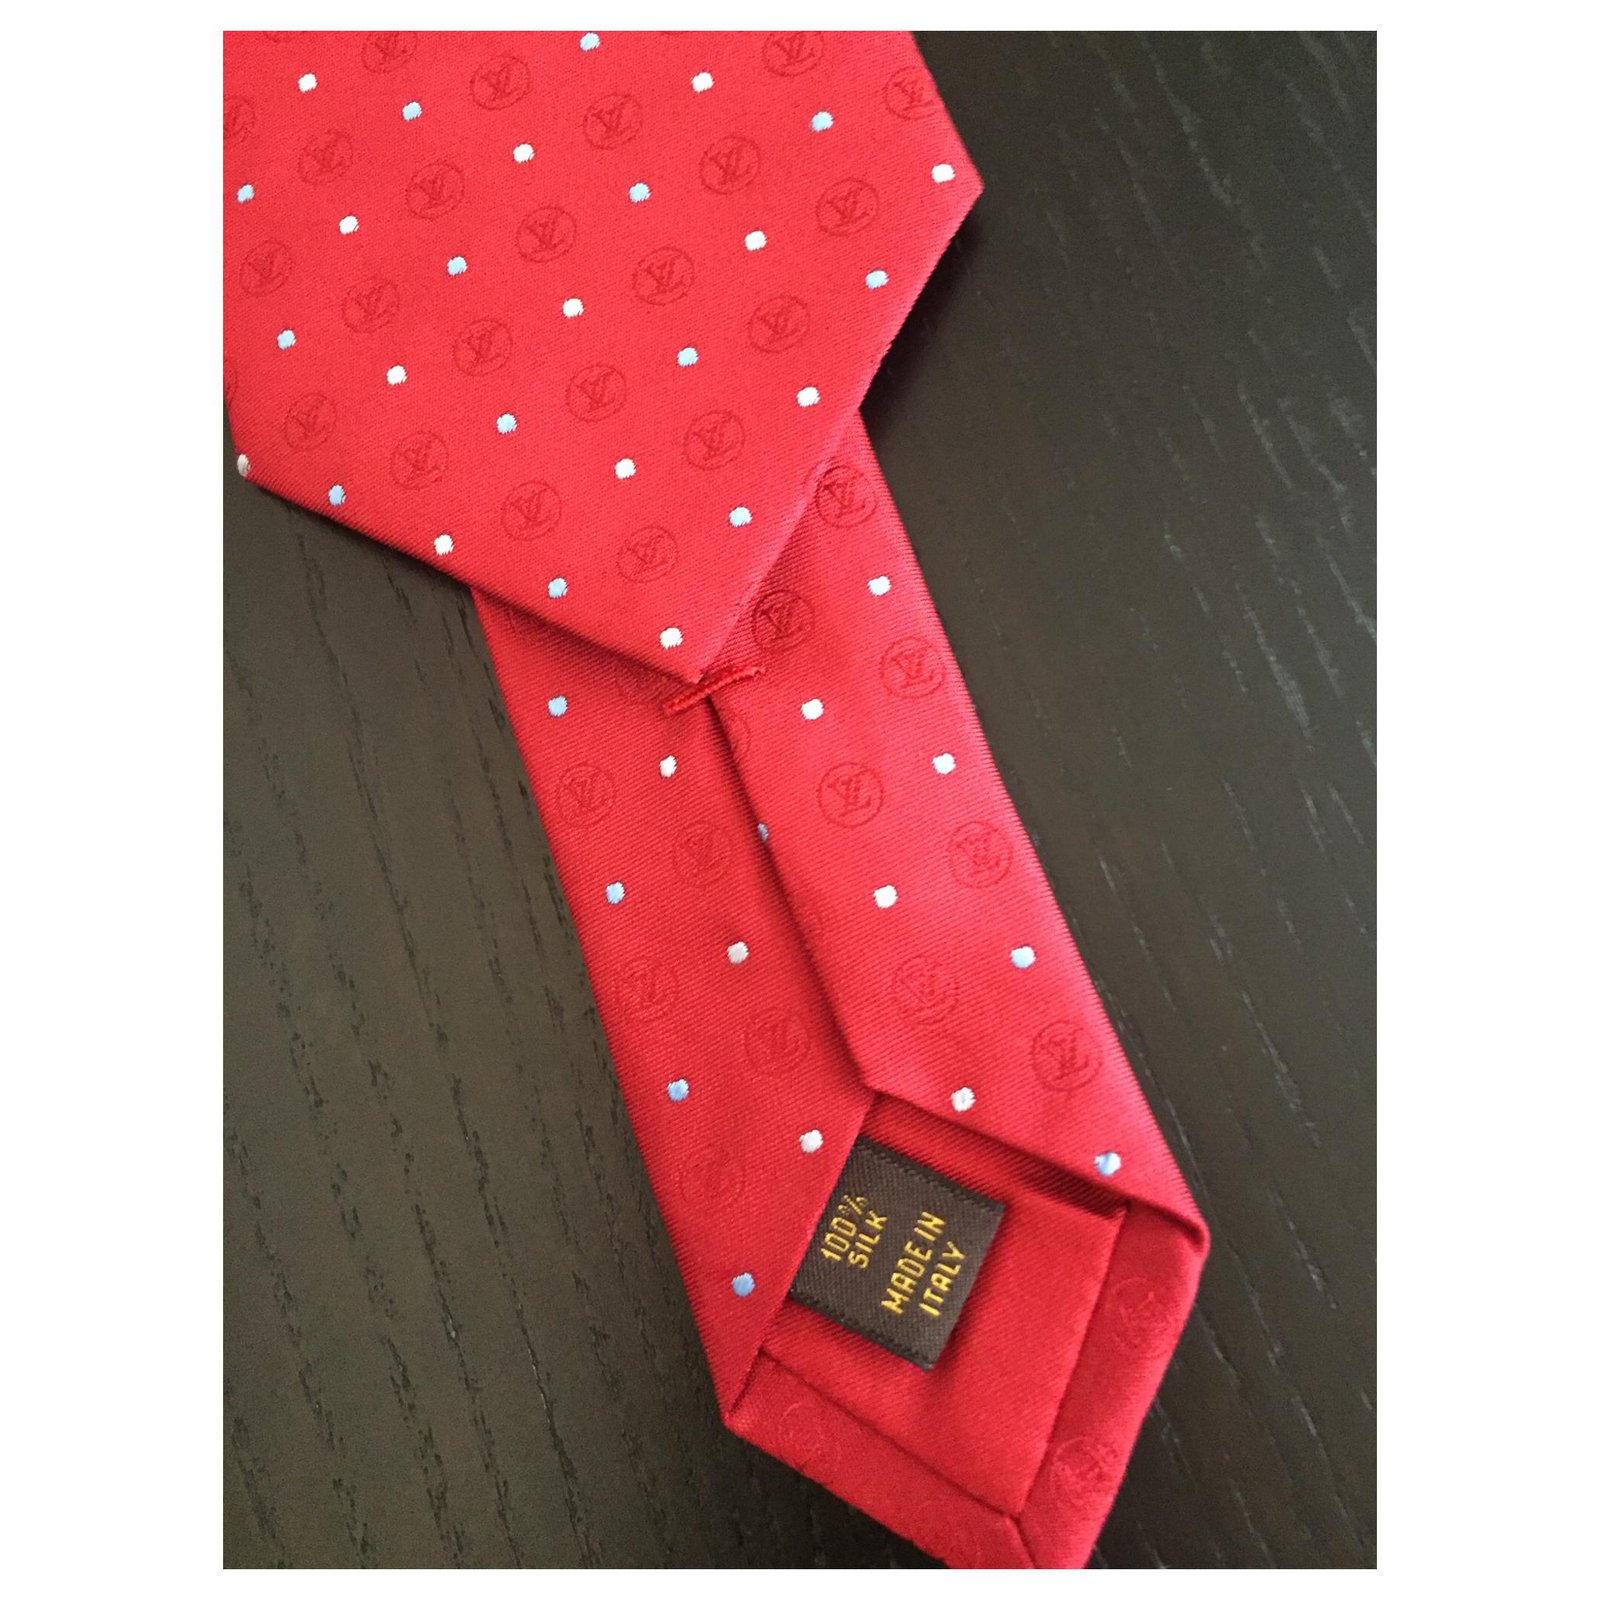 Corbatas Louis vuitton Rojo de en Seda - 15074787